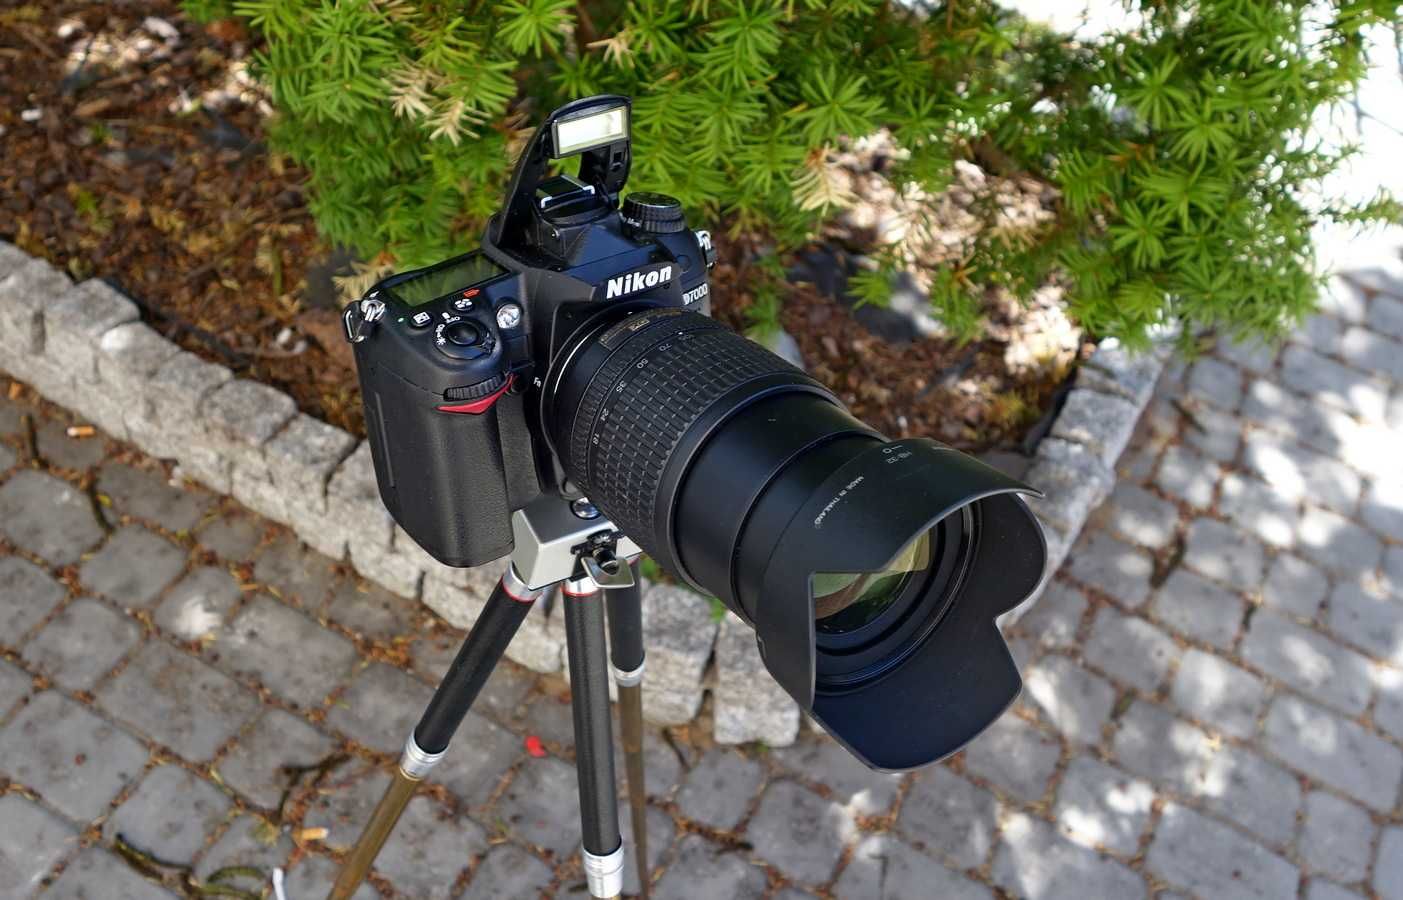 Lustrzanka Nikon D7000 komplet w stanie idealnym.Obiektyw 18-105mm